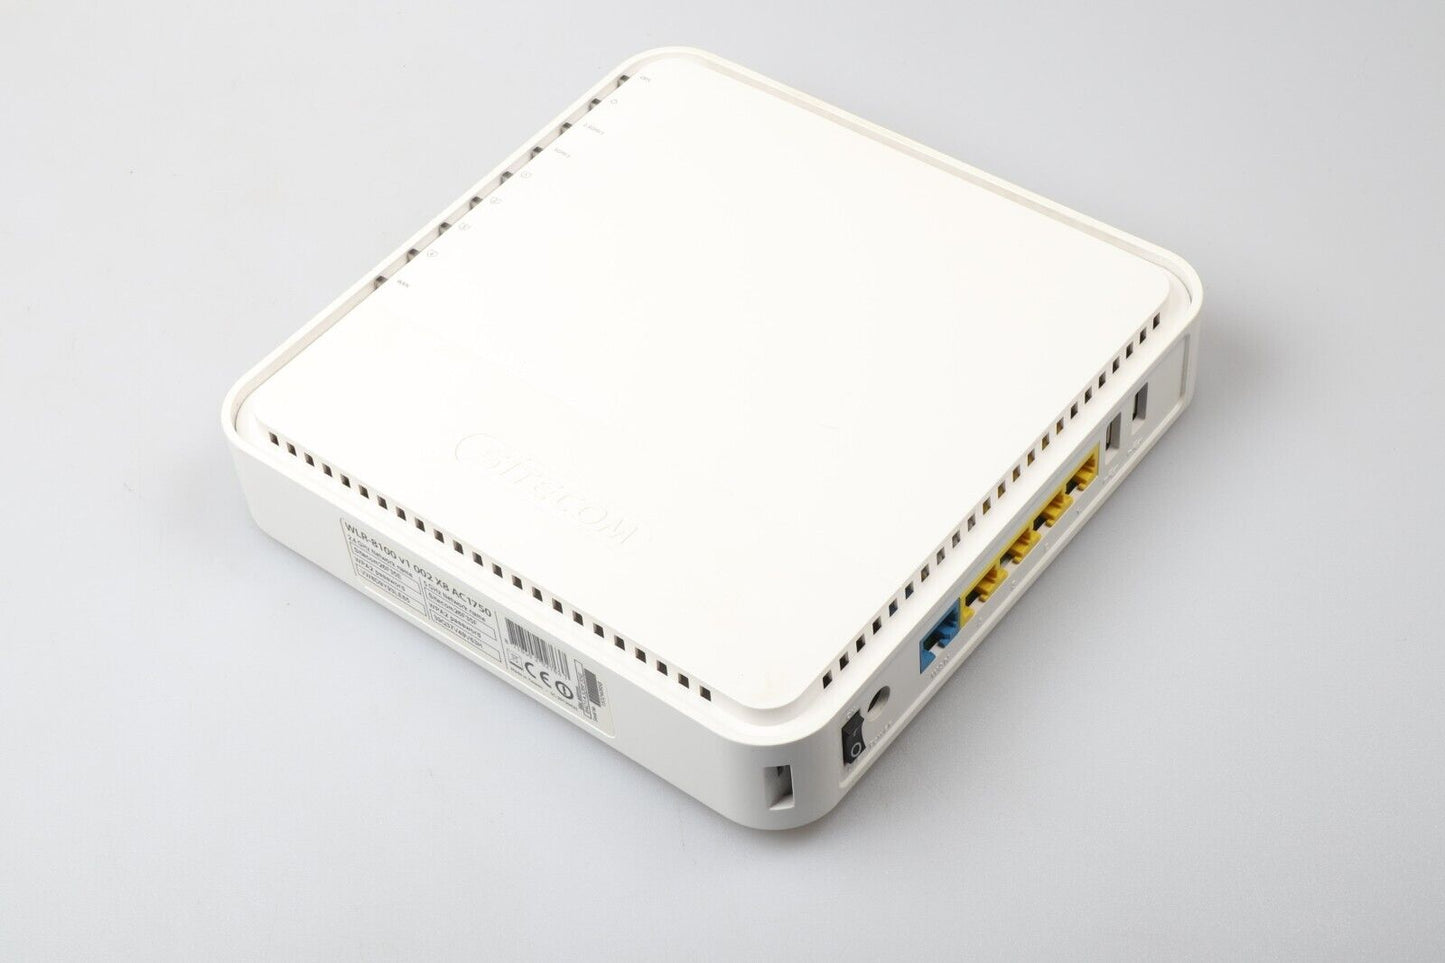 Sitecom Wifi Router | X8 AC1750